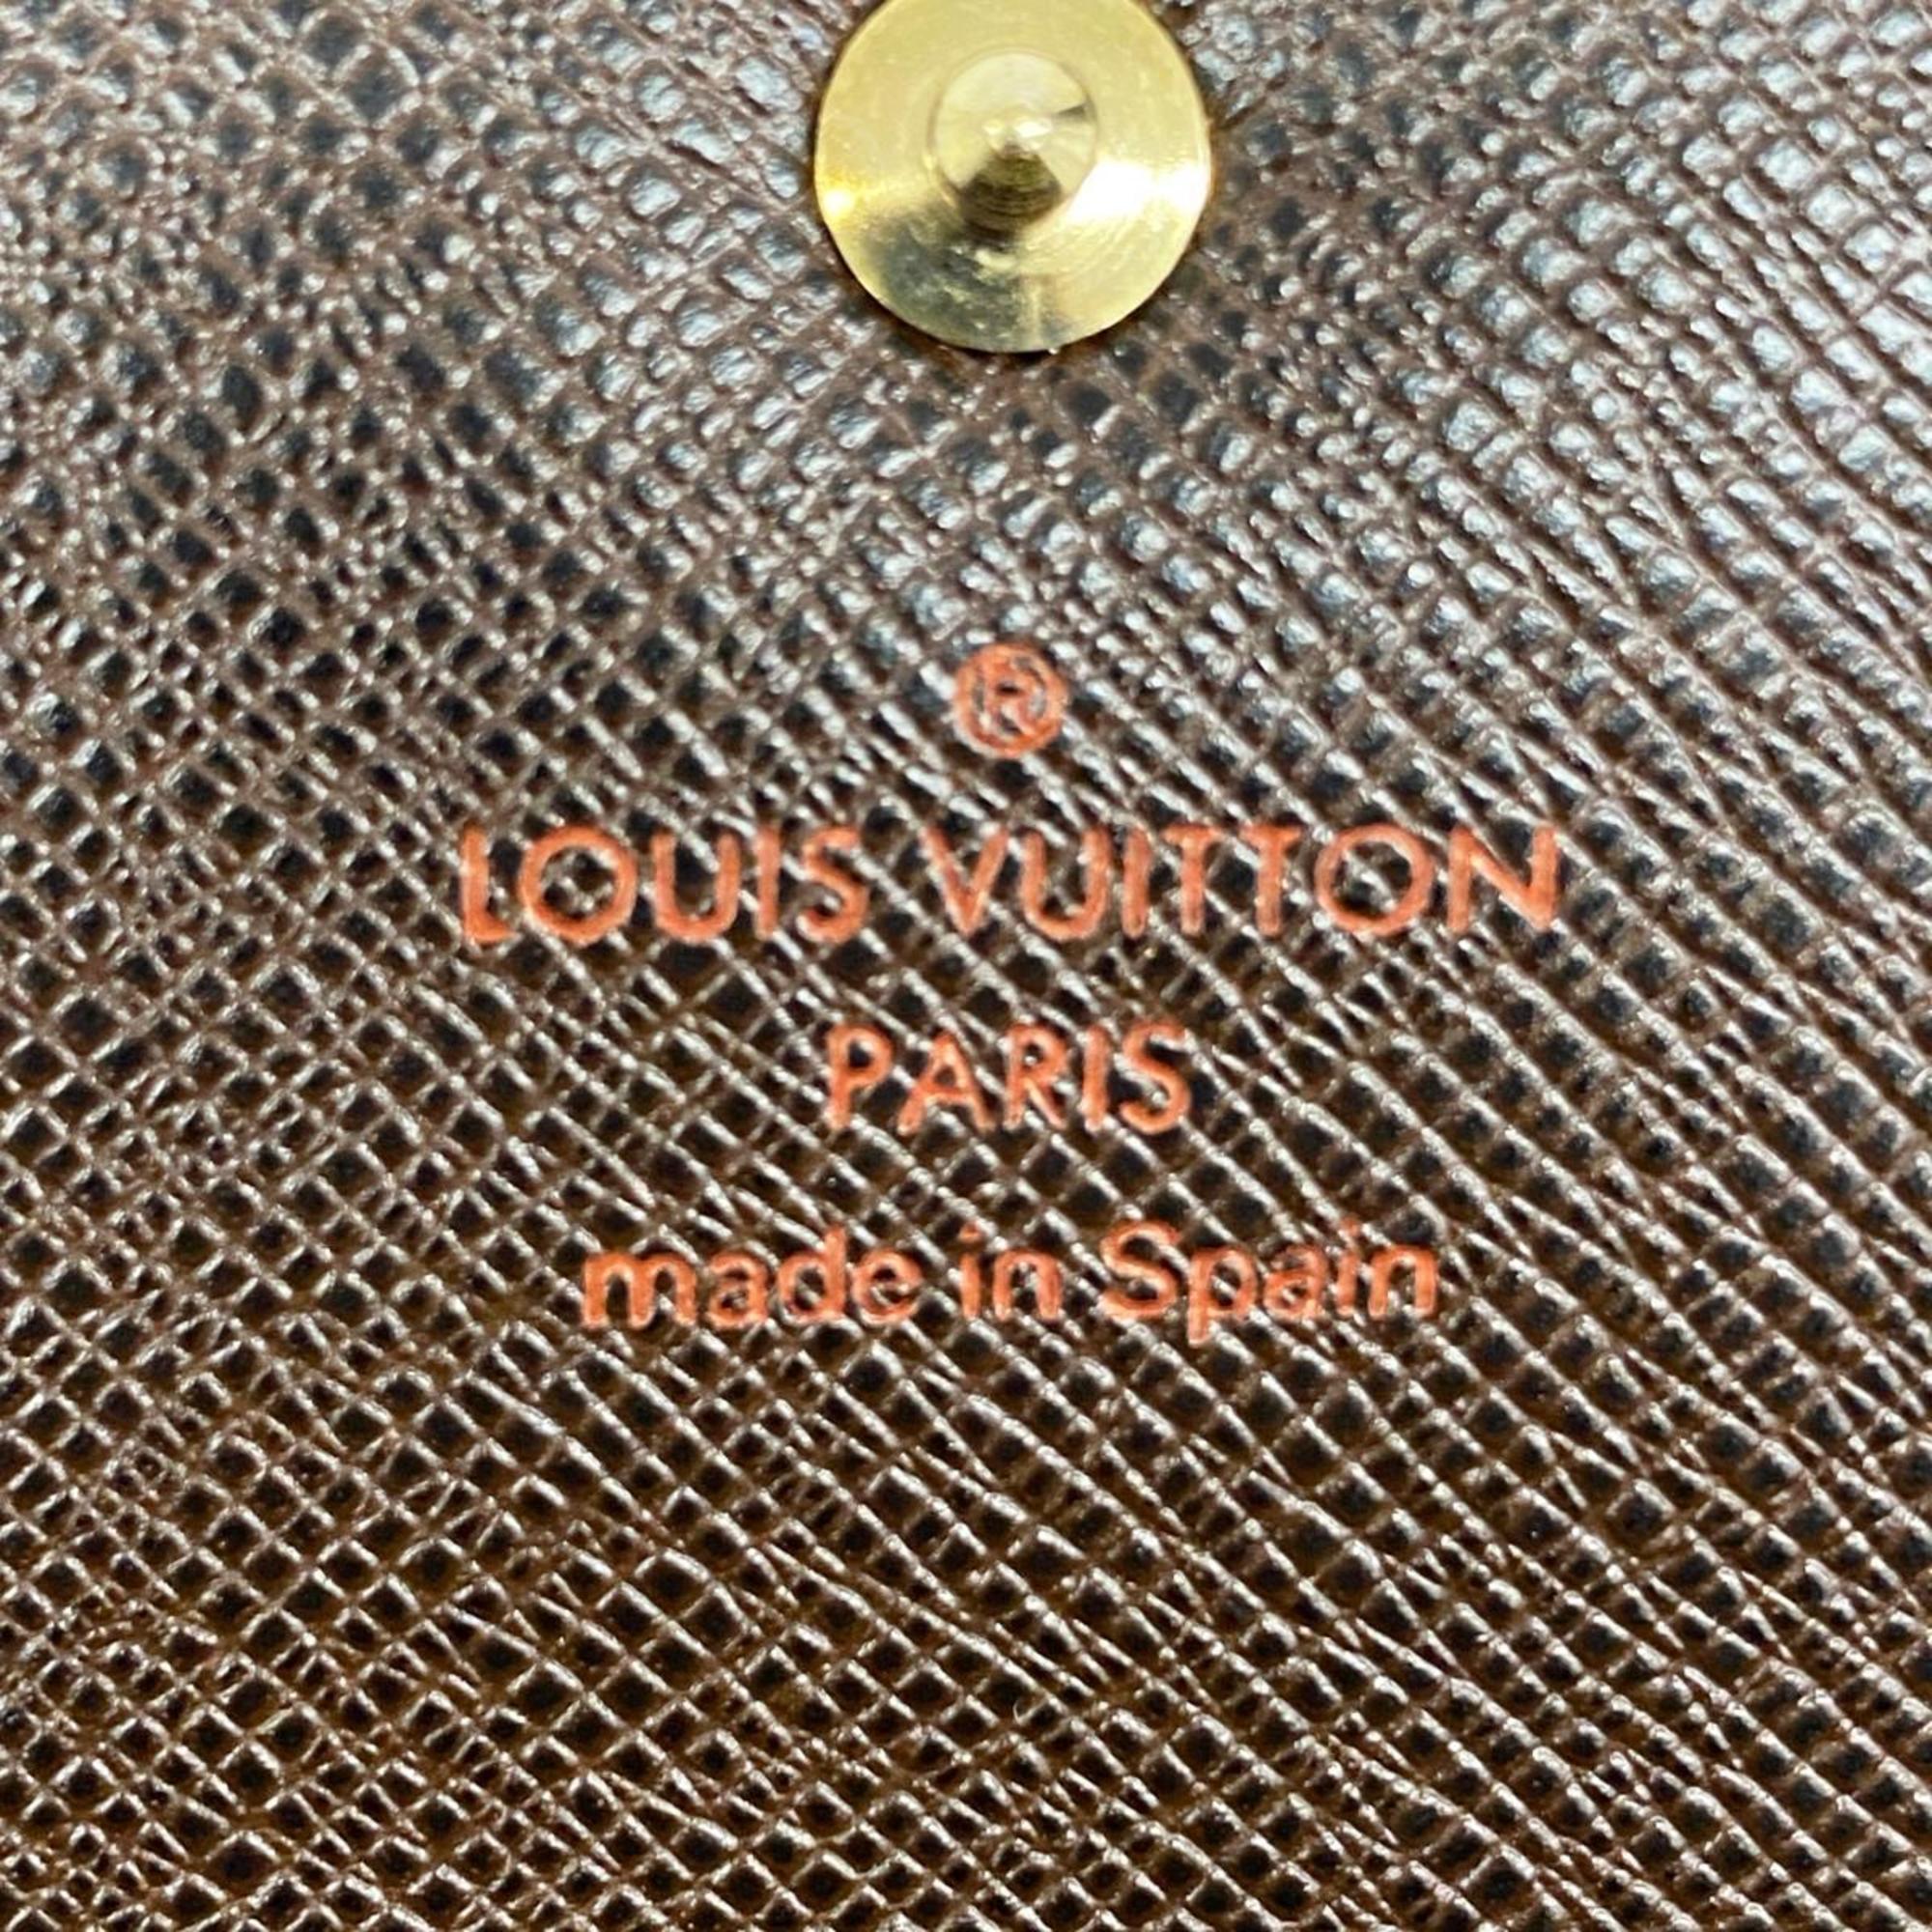 ルイ・ヴィトン(Louis Vuitton) ルイ・ヴィトン 長財布 ダミエ ポルトモネクレディ N61725 エベヌメンズ レディース